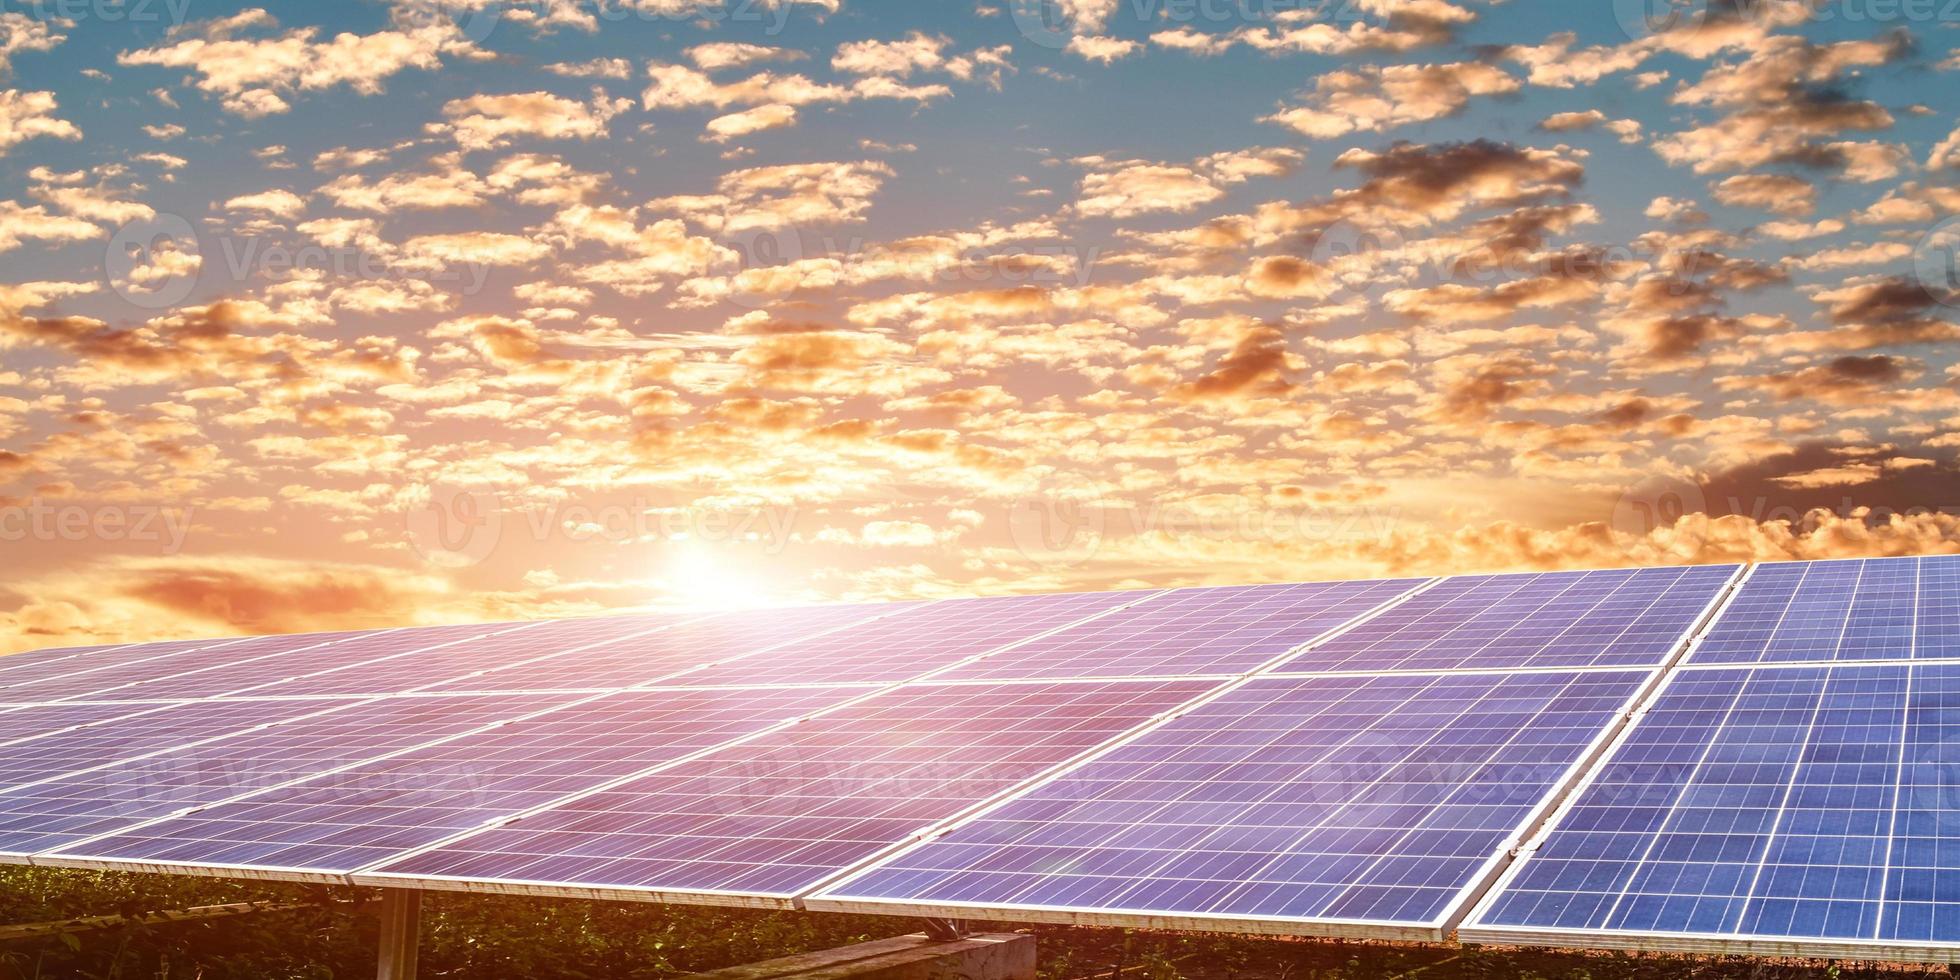 Sonnenkollektor vor Sonnenuntergang Himmelshintergrund, Photovoltaik, alternative Stromquelle, Module erneuerbare Energie. Konzept der nachhaltigen Energieressourcen foto